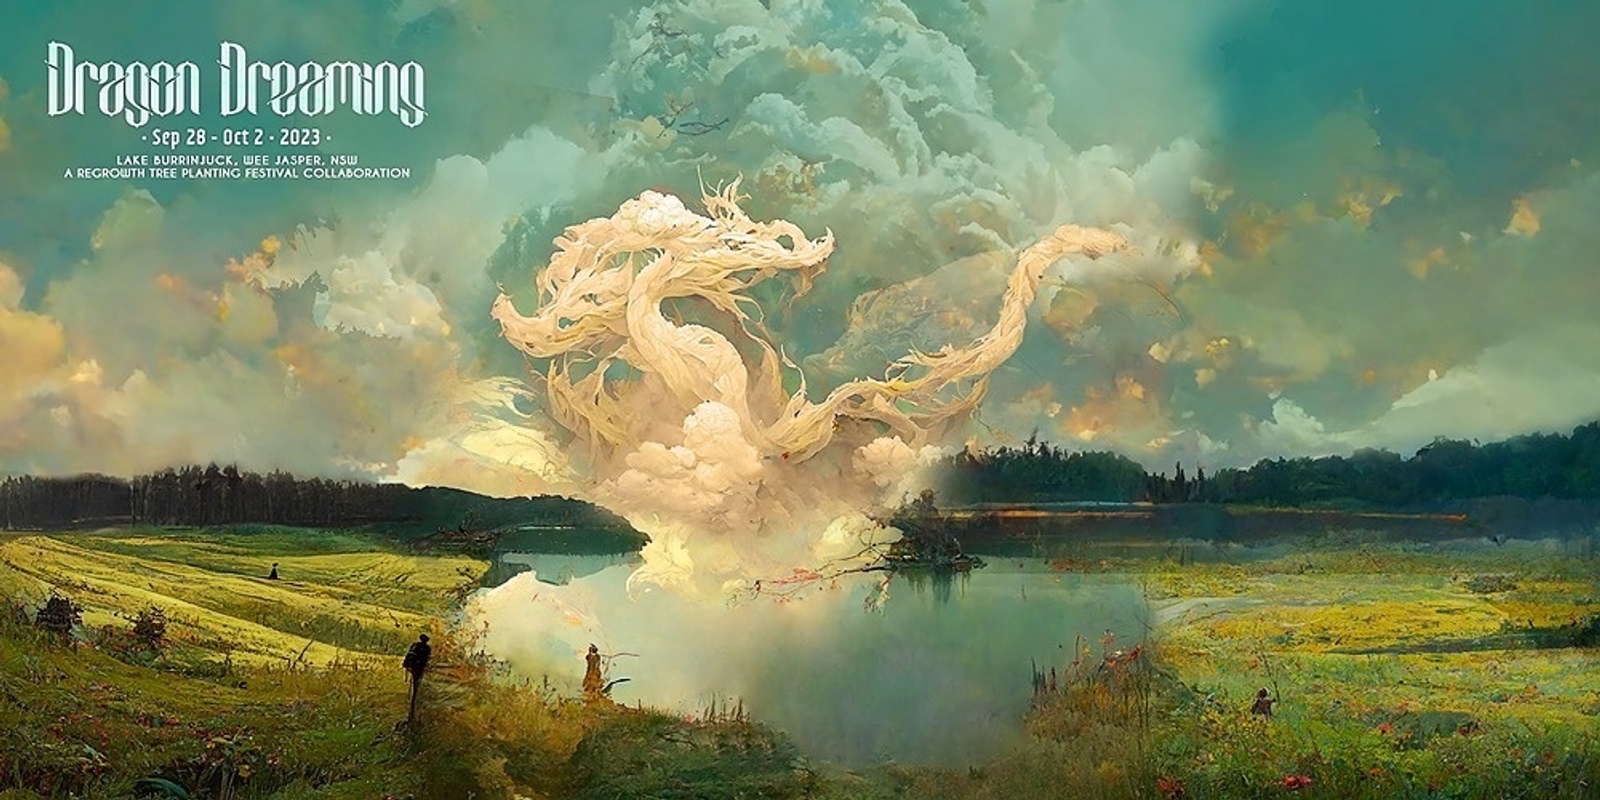 Banner image for Dragon Dreaming Festival '23 